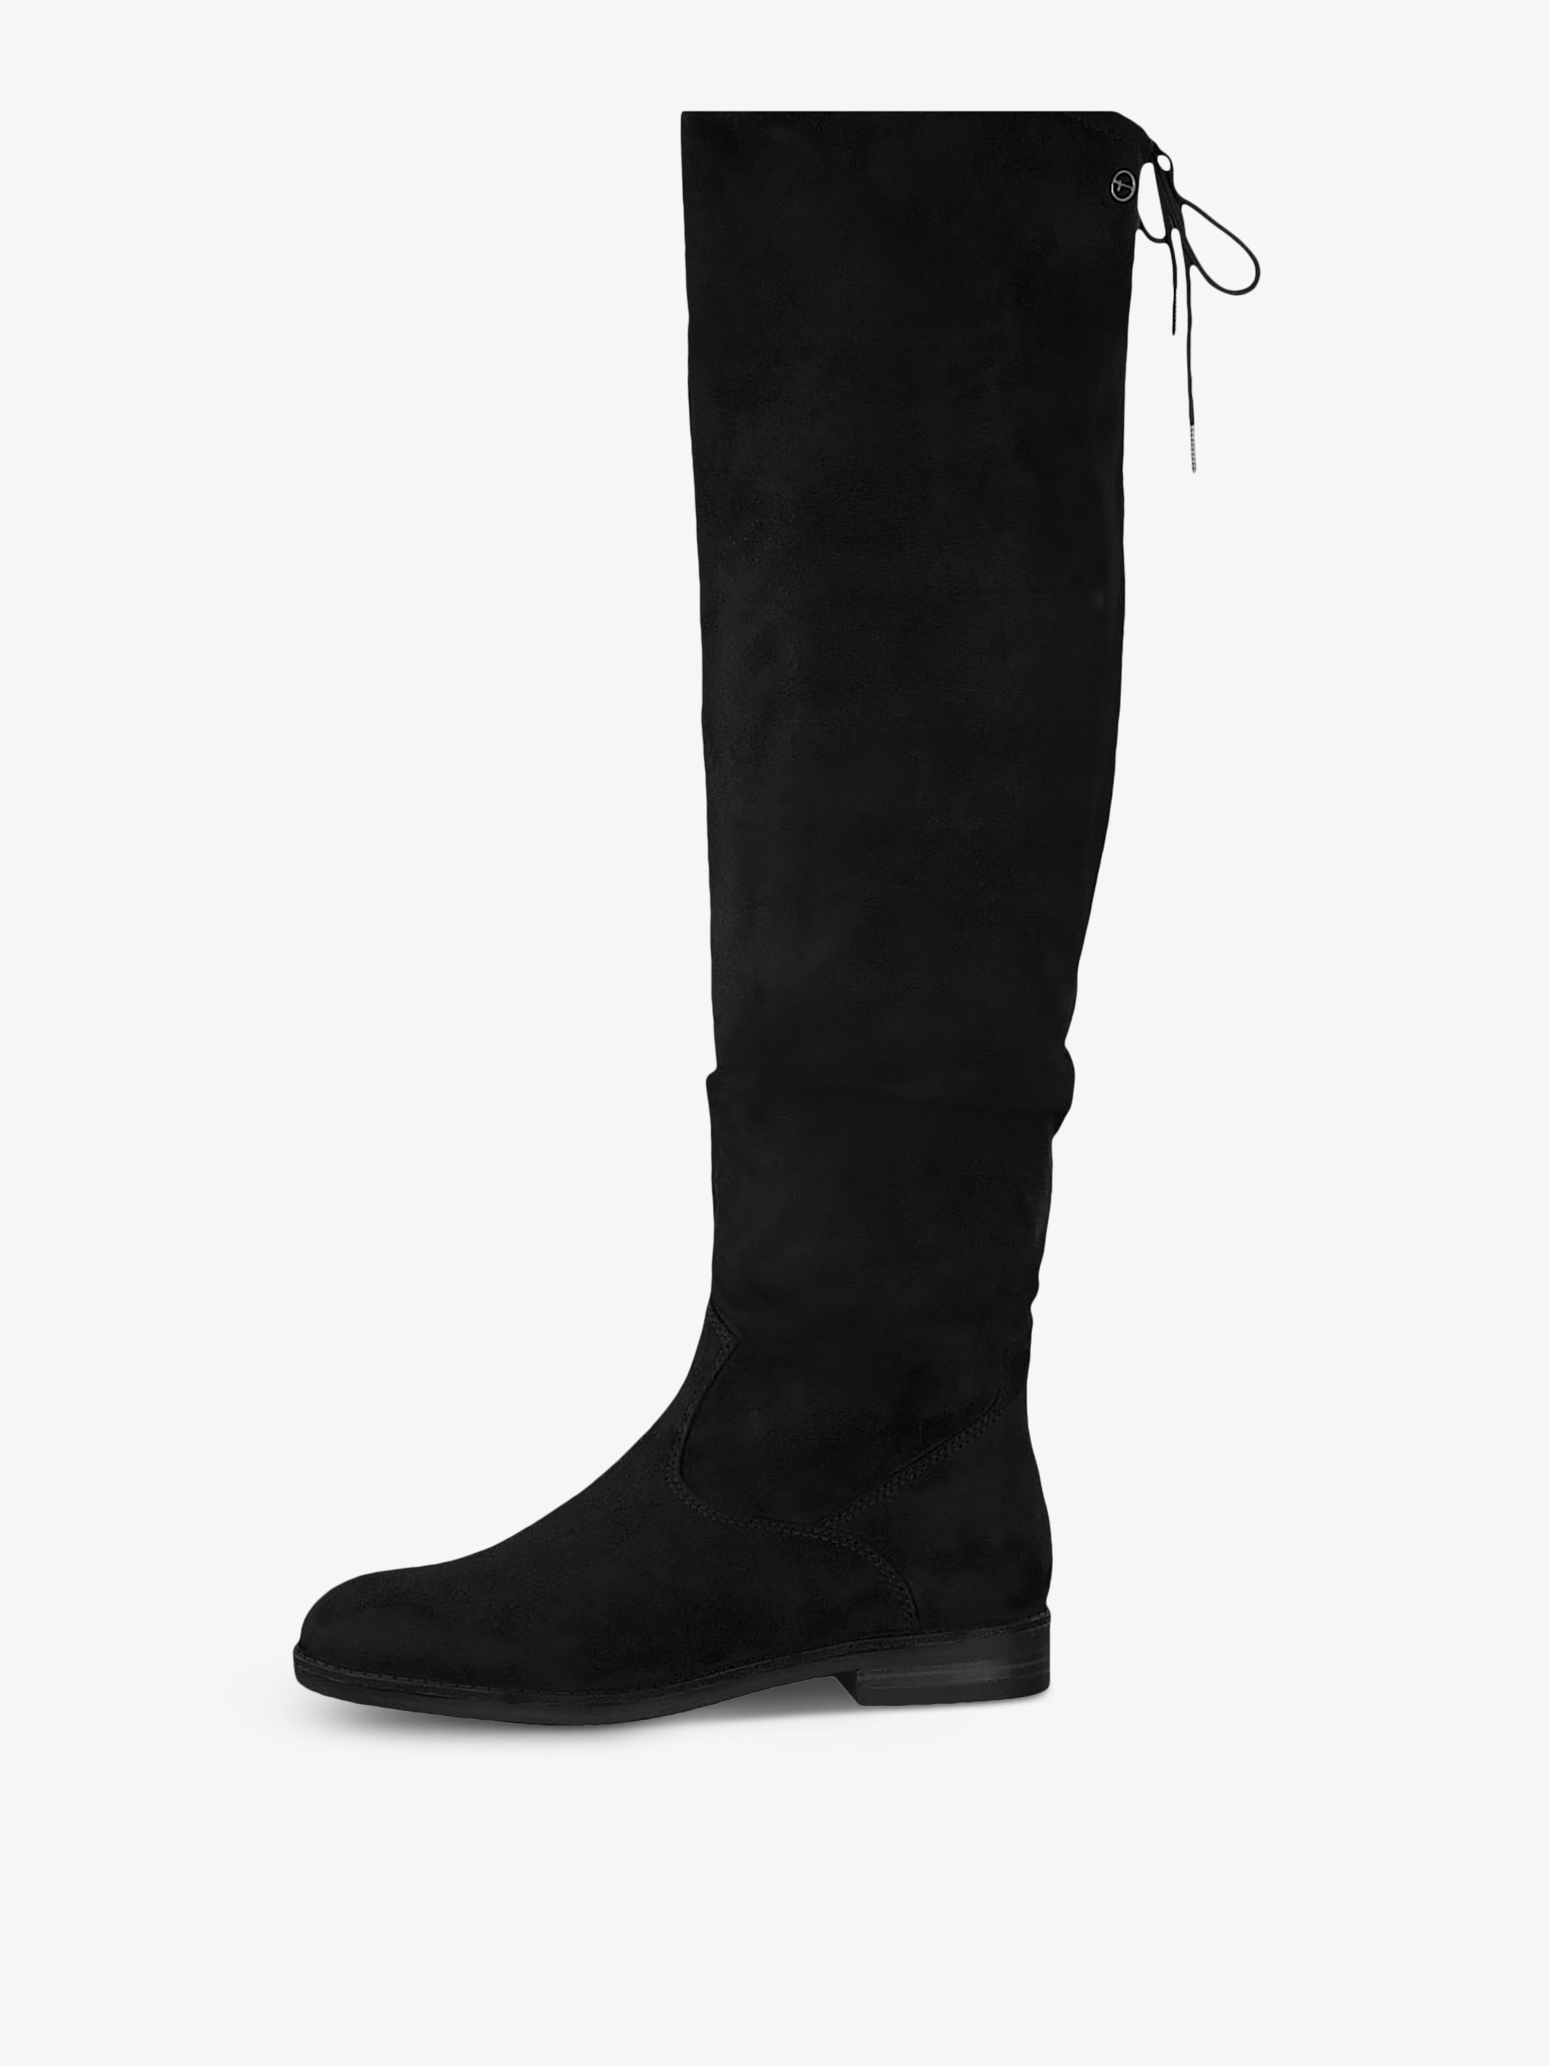 Overknee boots 1-1-25500-23: Buy Tamaris Overknee boots online!